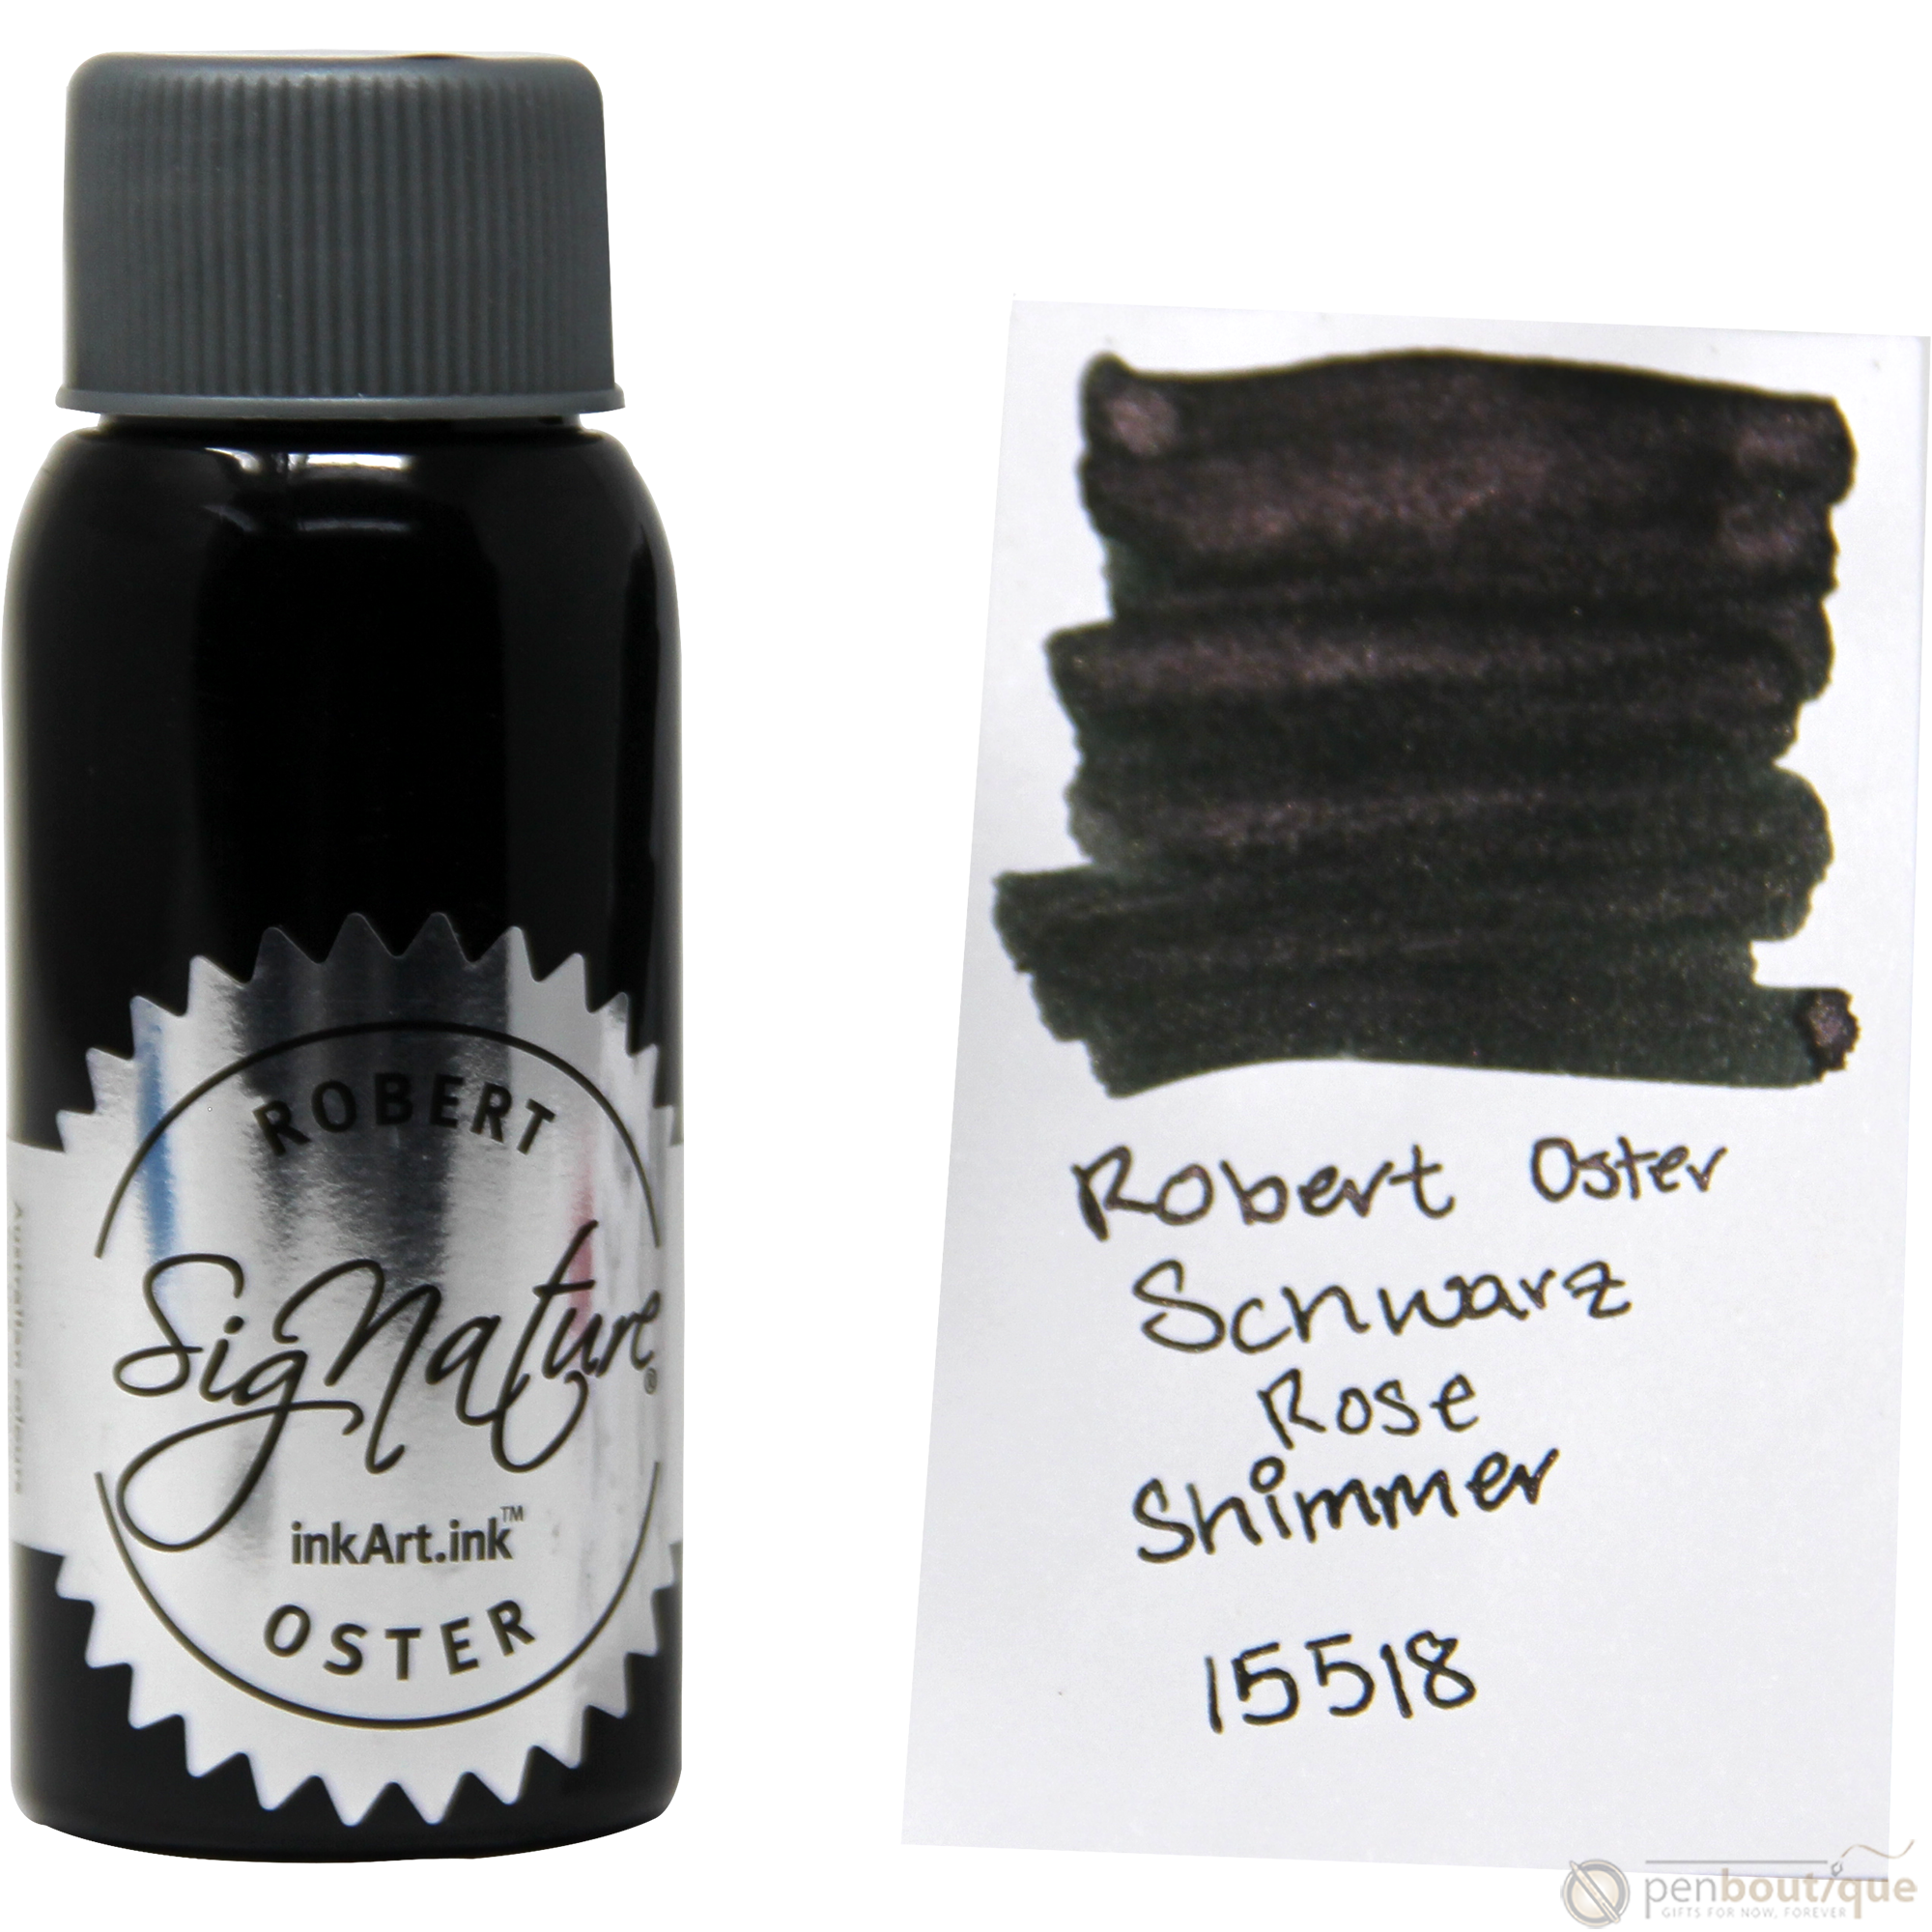 Robert Oster Shake'N'Shimmy Ink Bottle - Schwarz Rose - 50ml-Pen Boutique Ltd